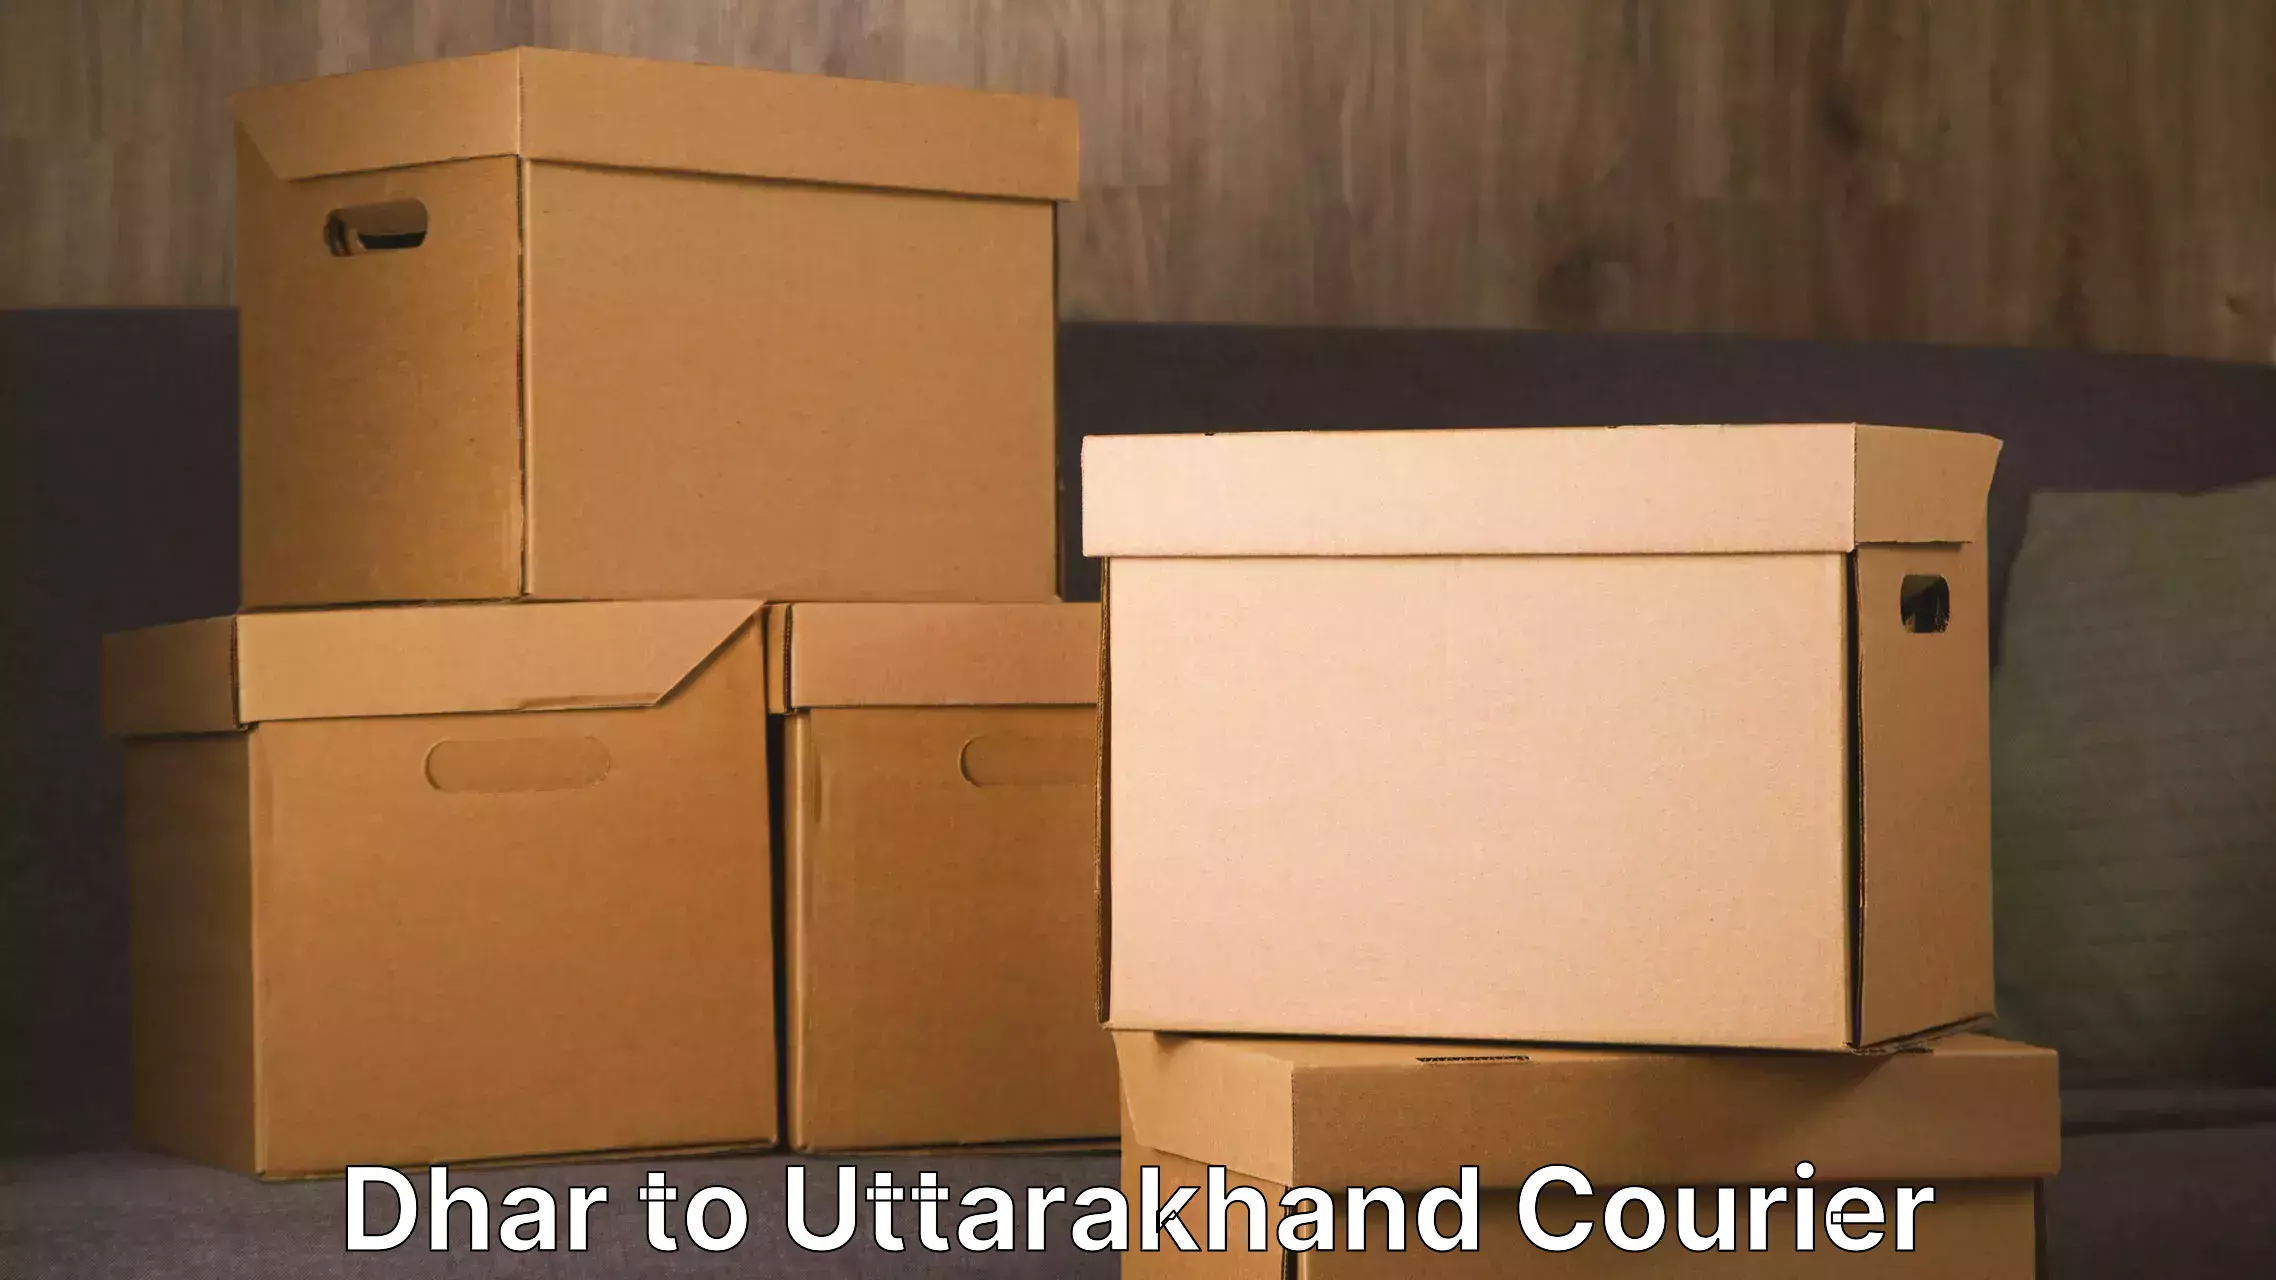 Trusted furniture movers Dhar to Kotdwara